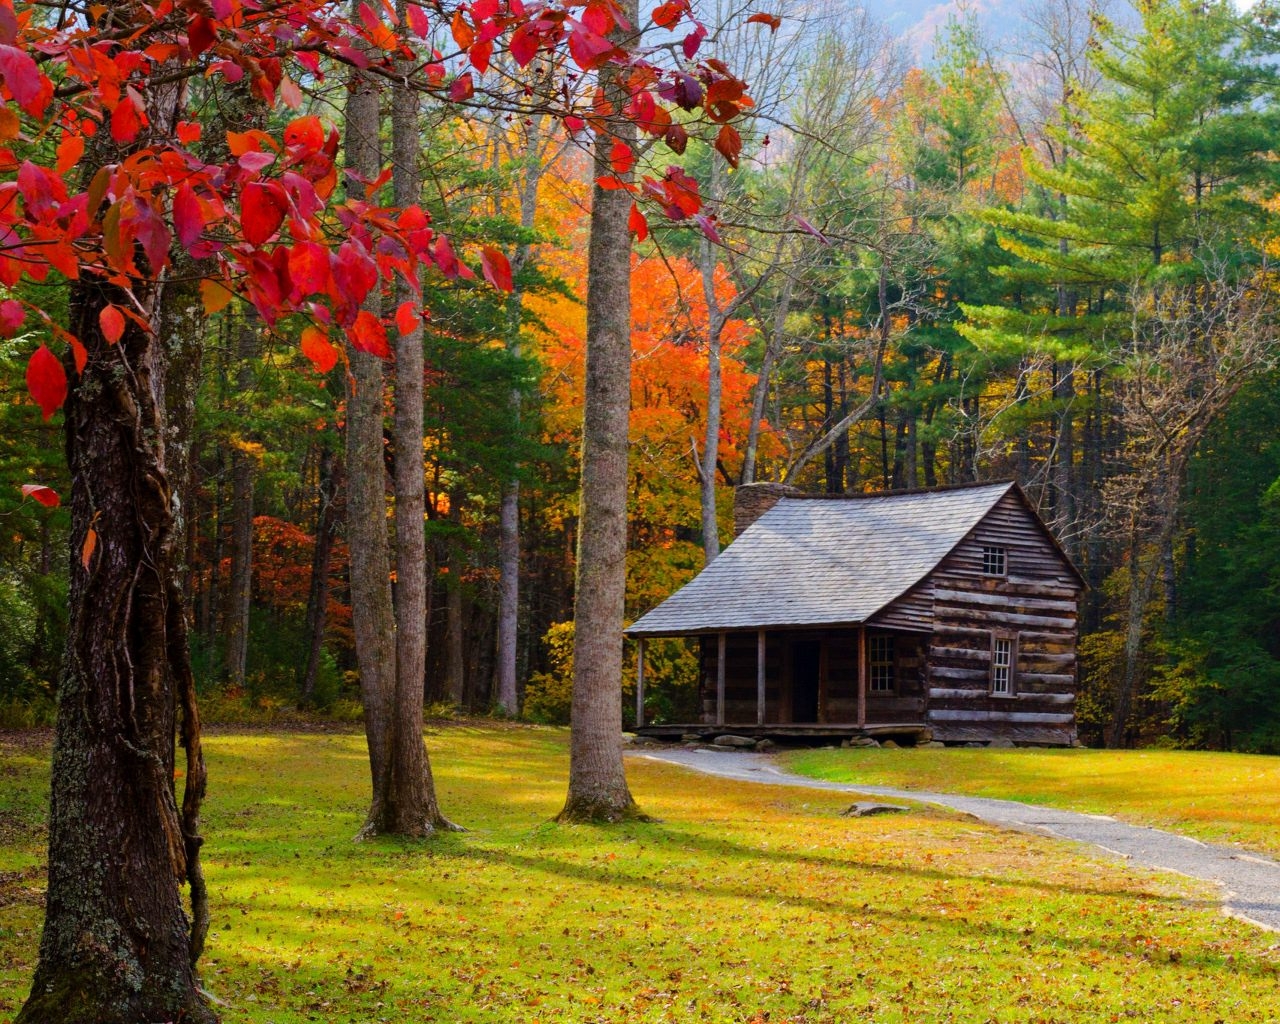 immagini di carta da parati per la casa,paesaggio naturale,natura,albero,foglia,autunno